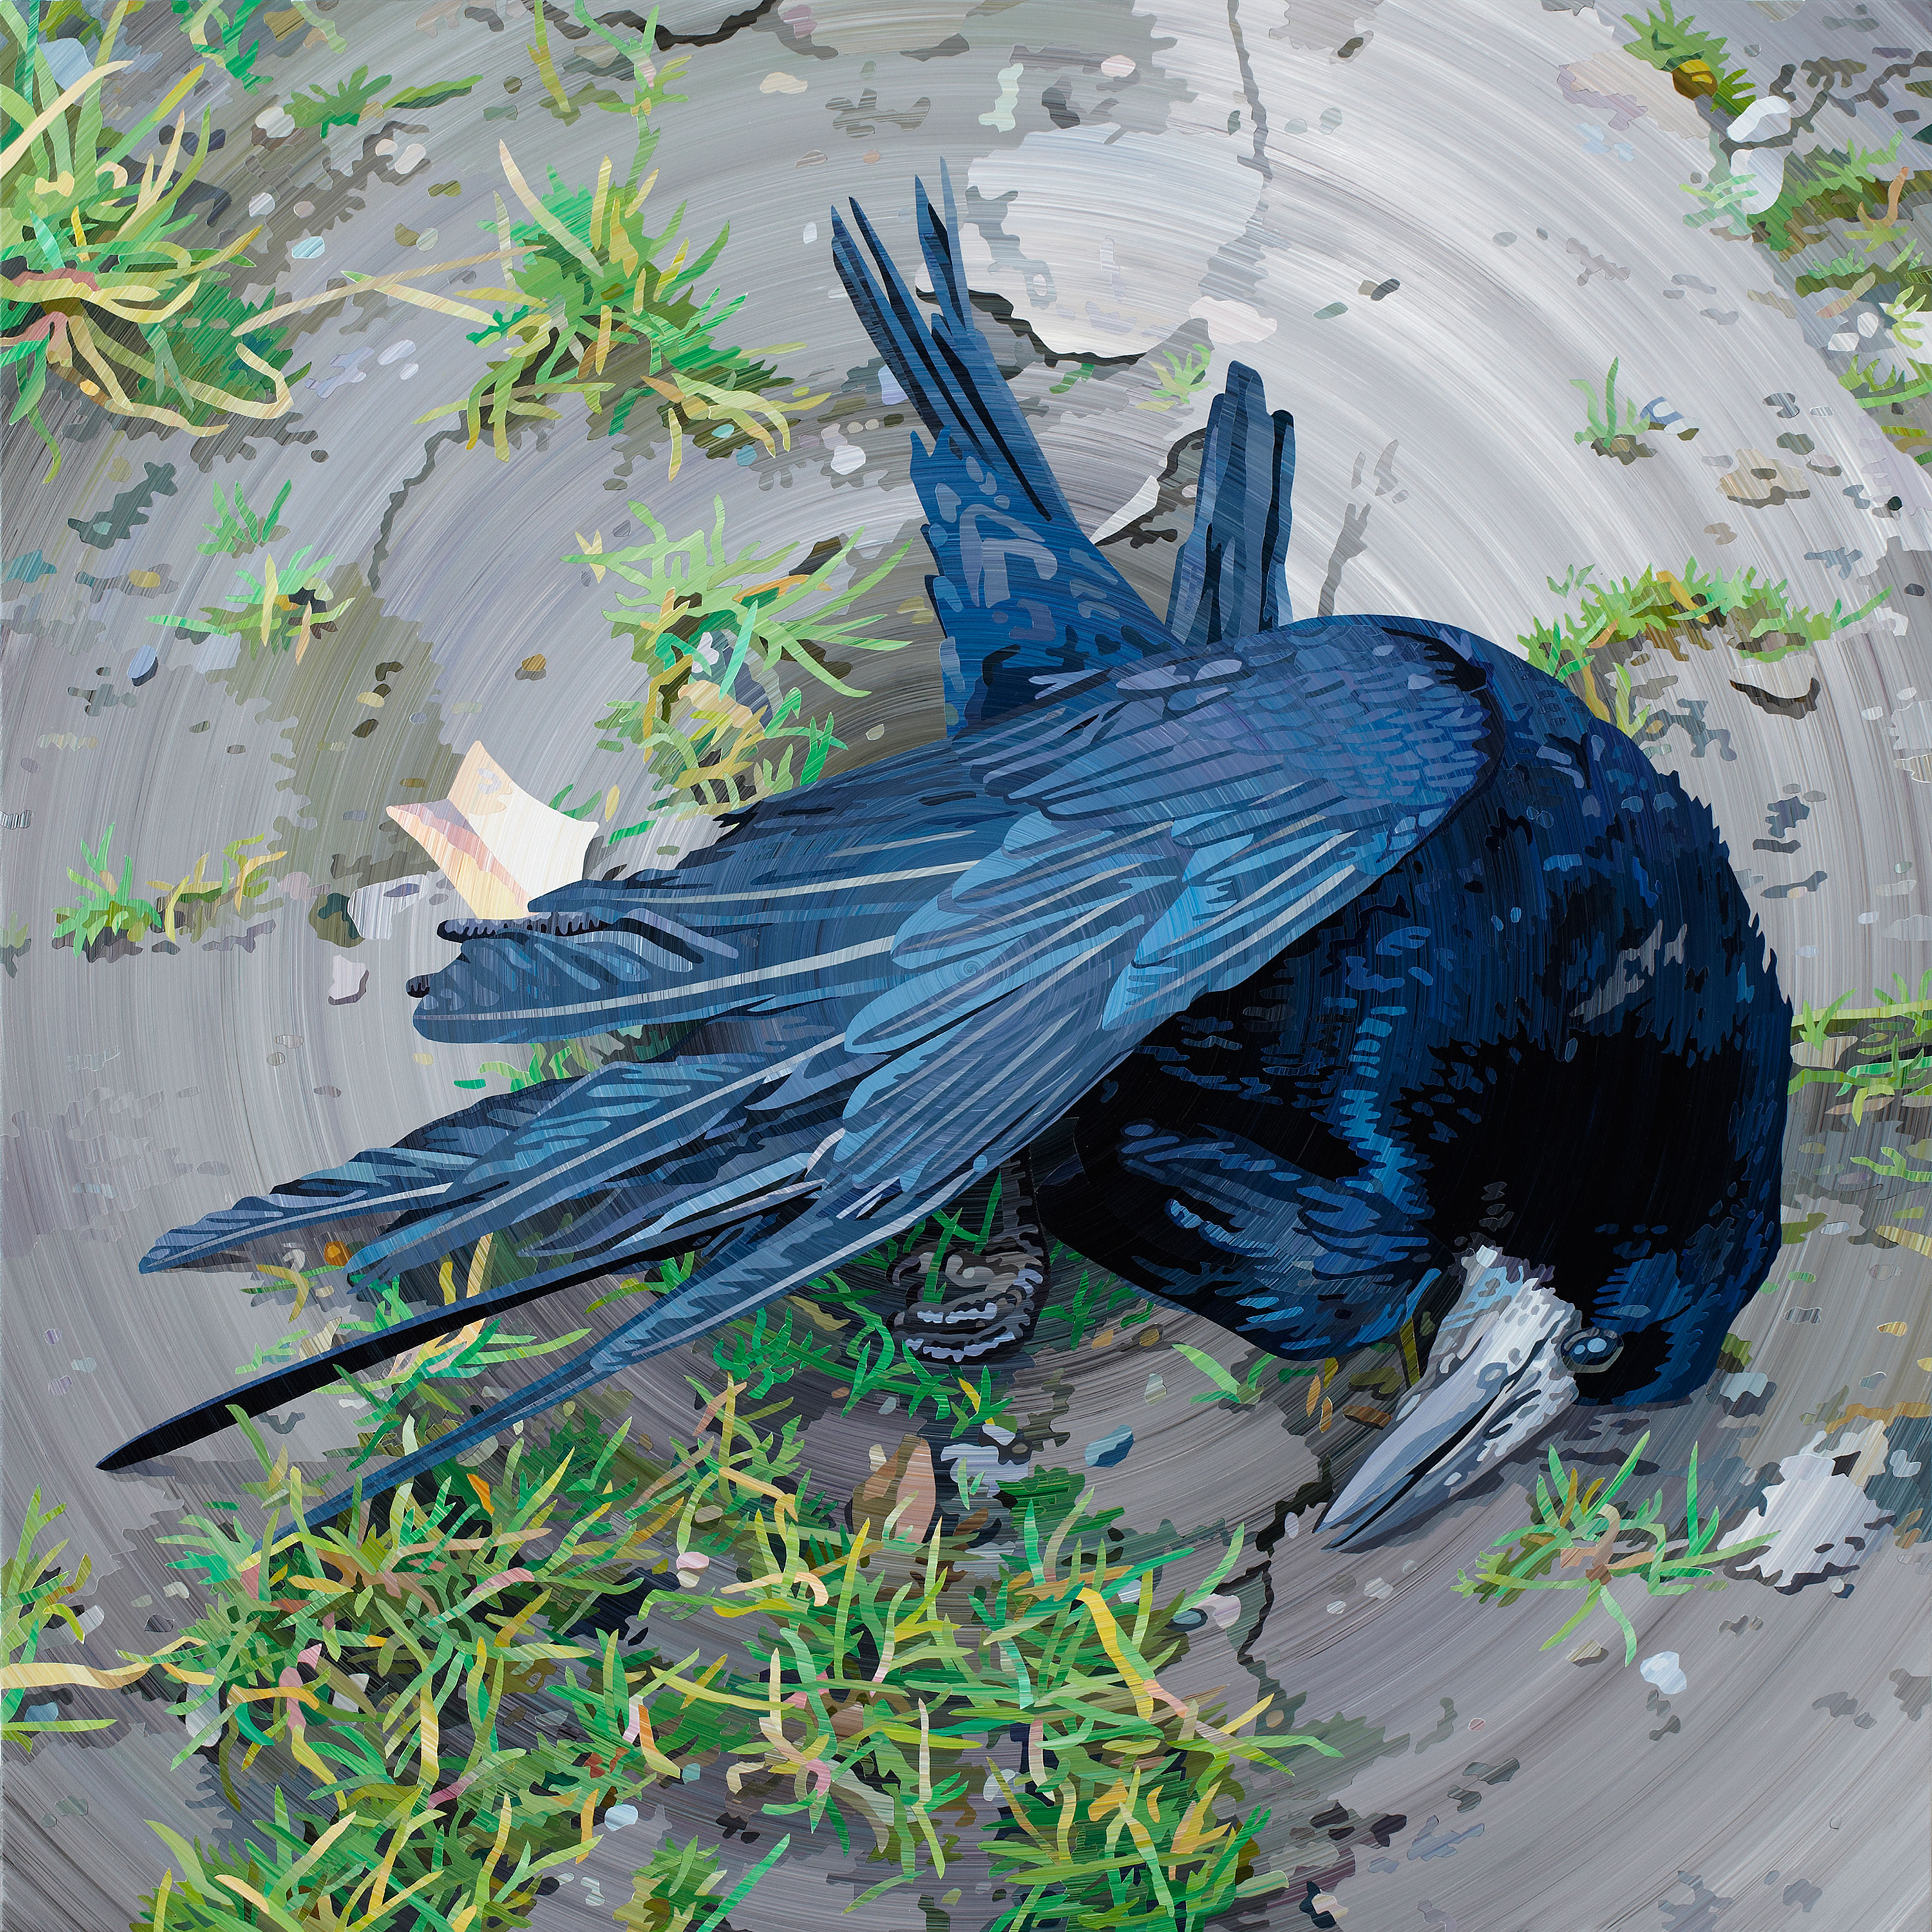 Fugl (Bird) - Acrylic Painting by Allan Otte